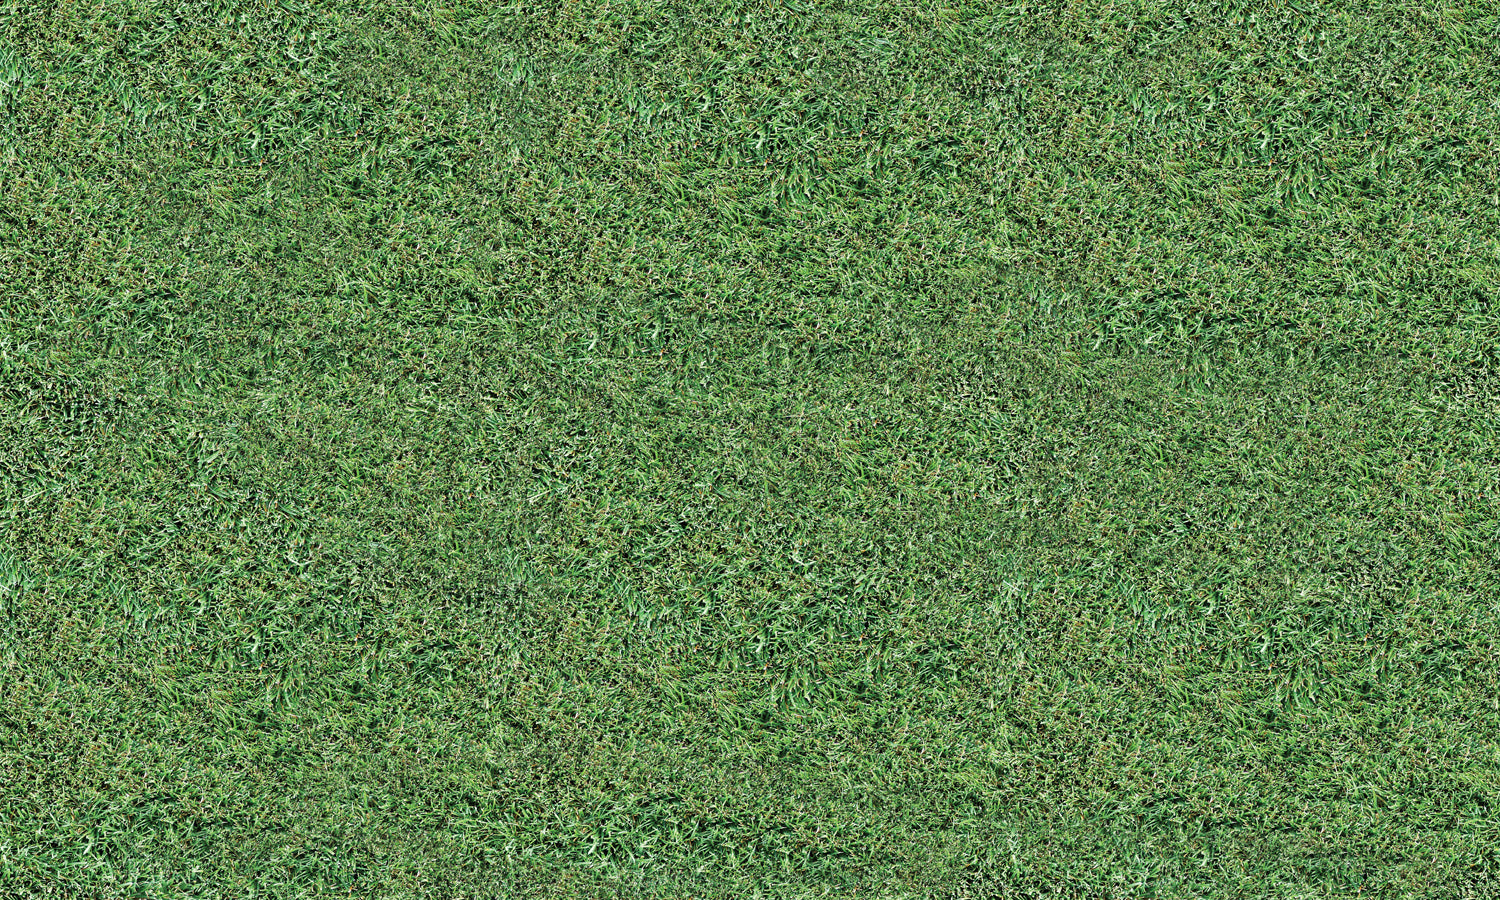 Samoljepljiva folija za namještaj - Zelena trava PAT071